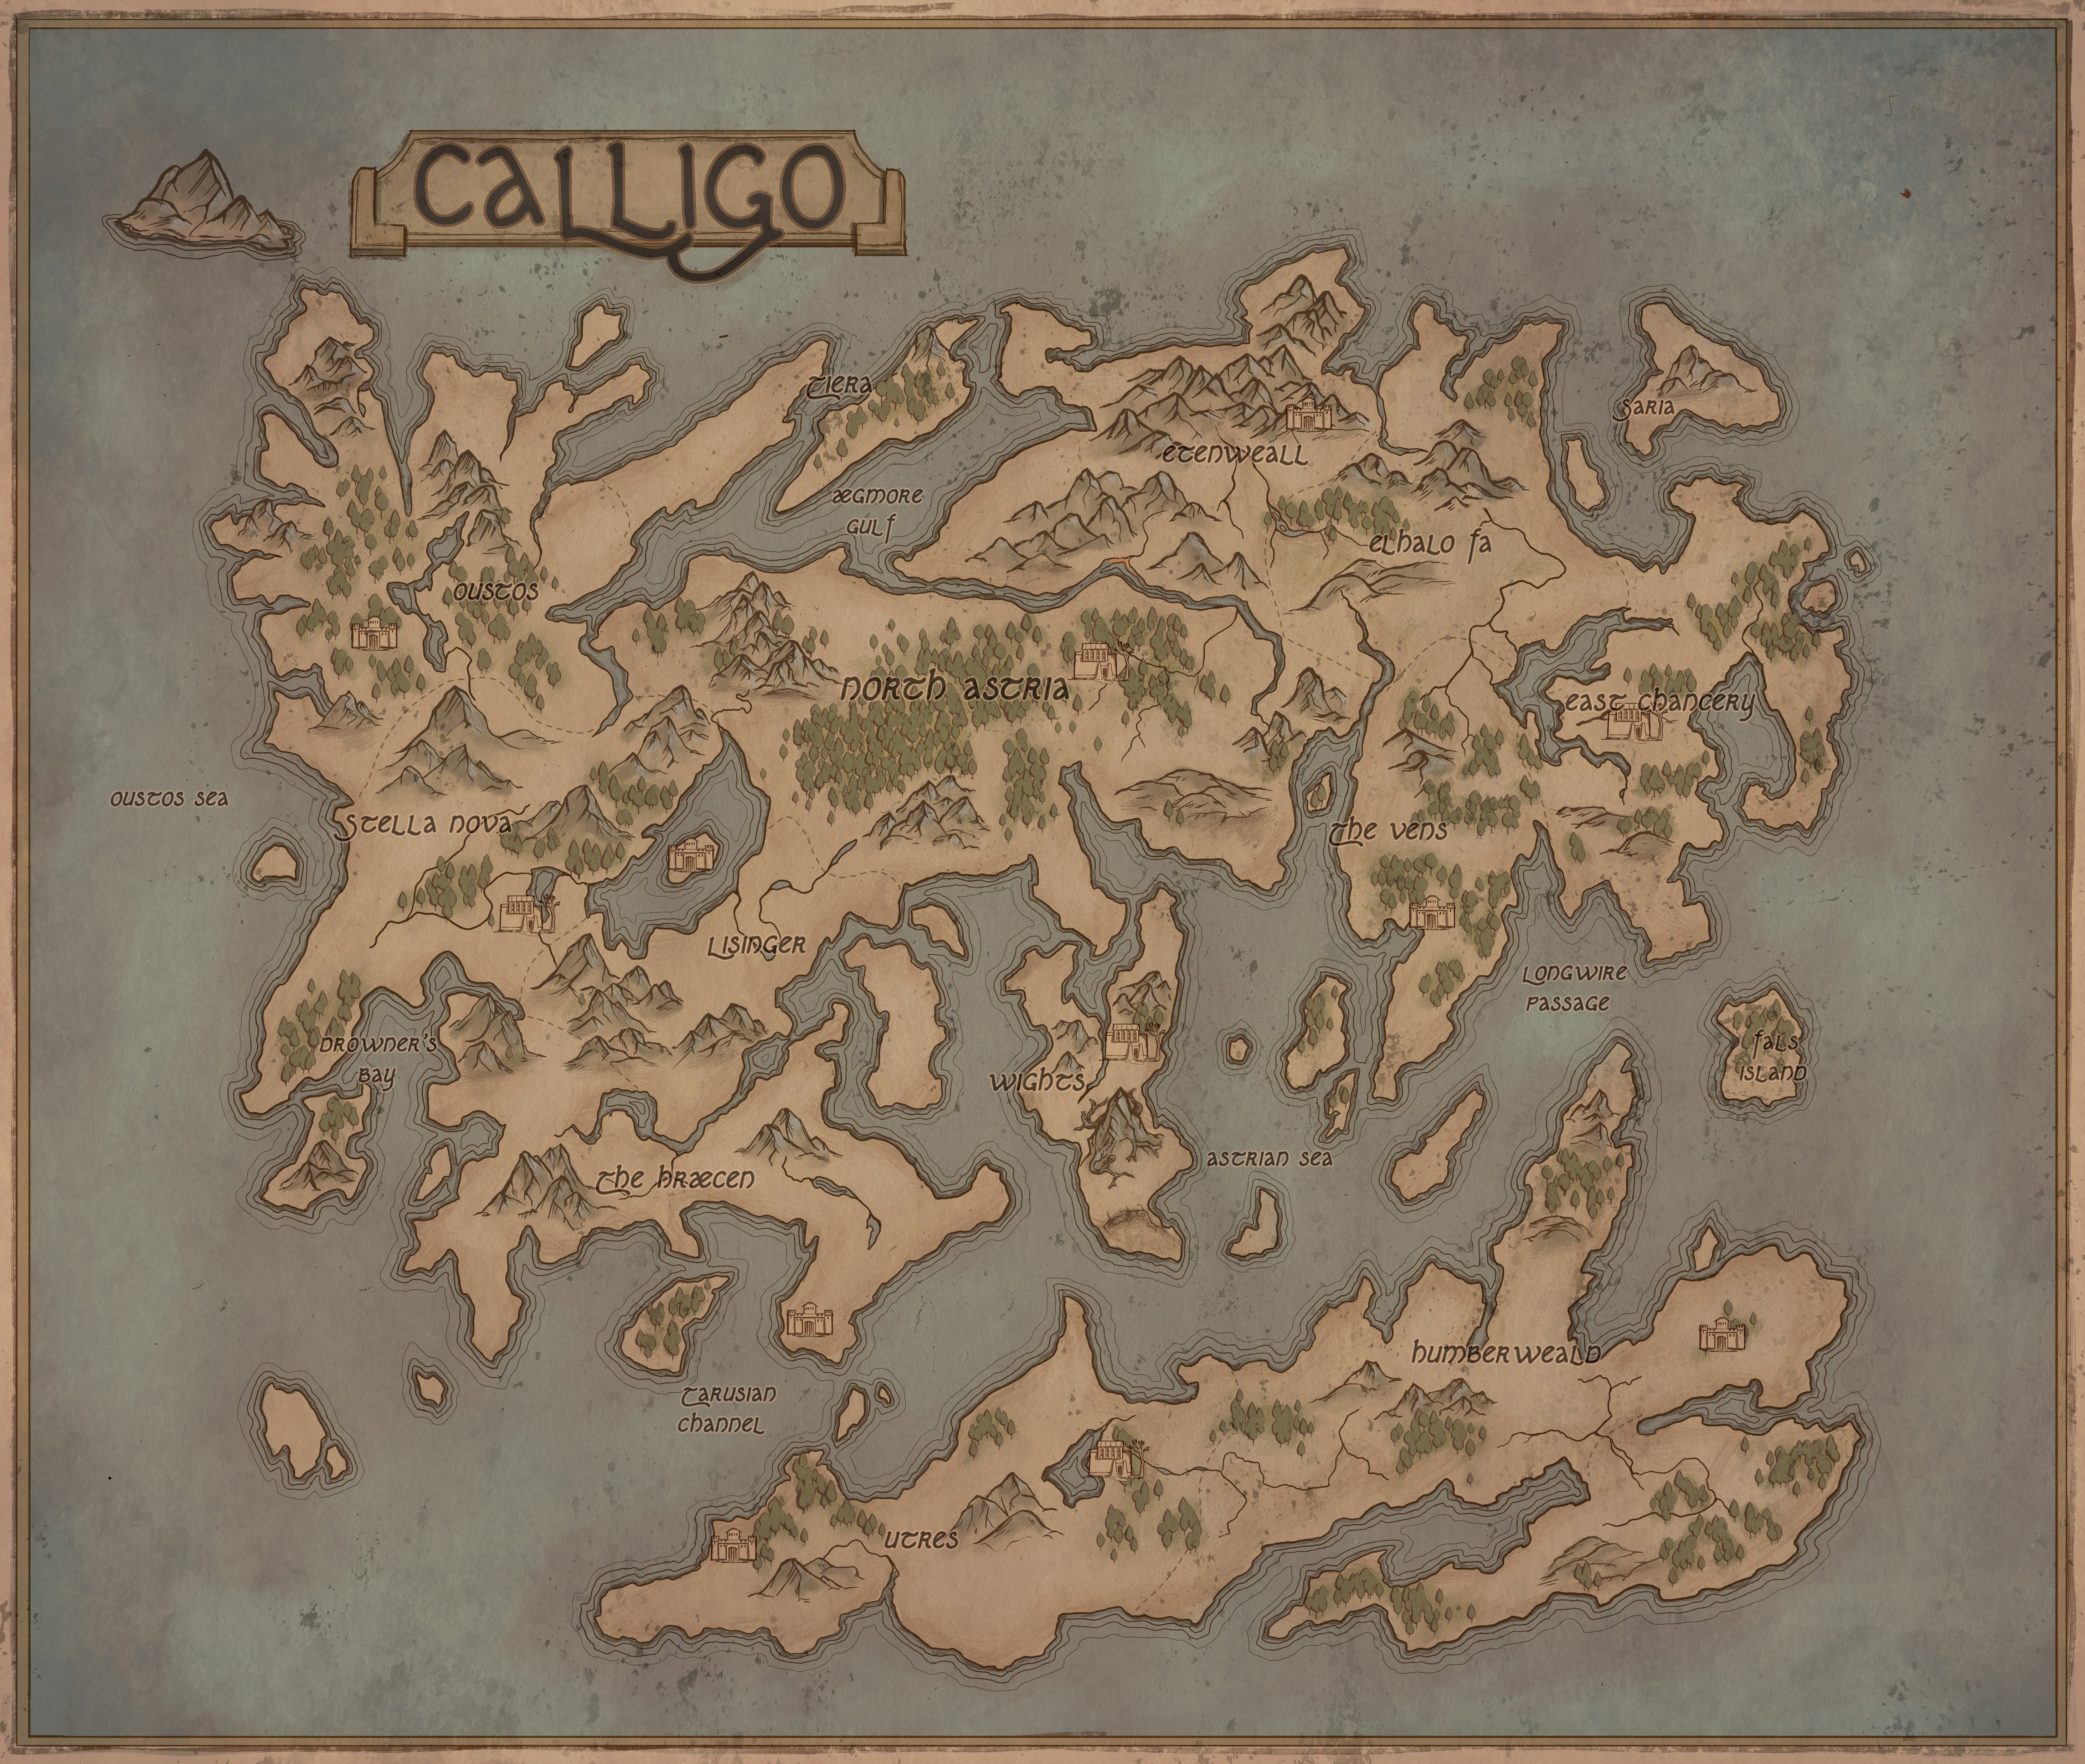 Map of Calligo